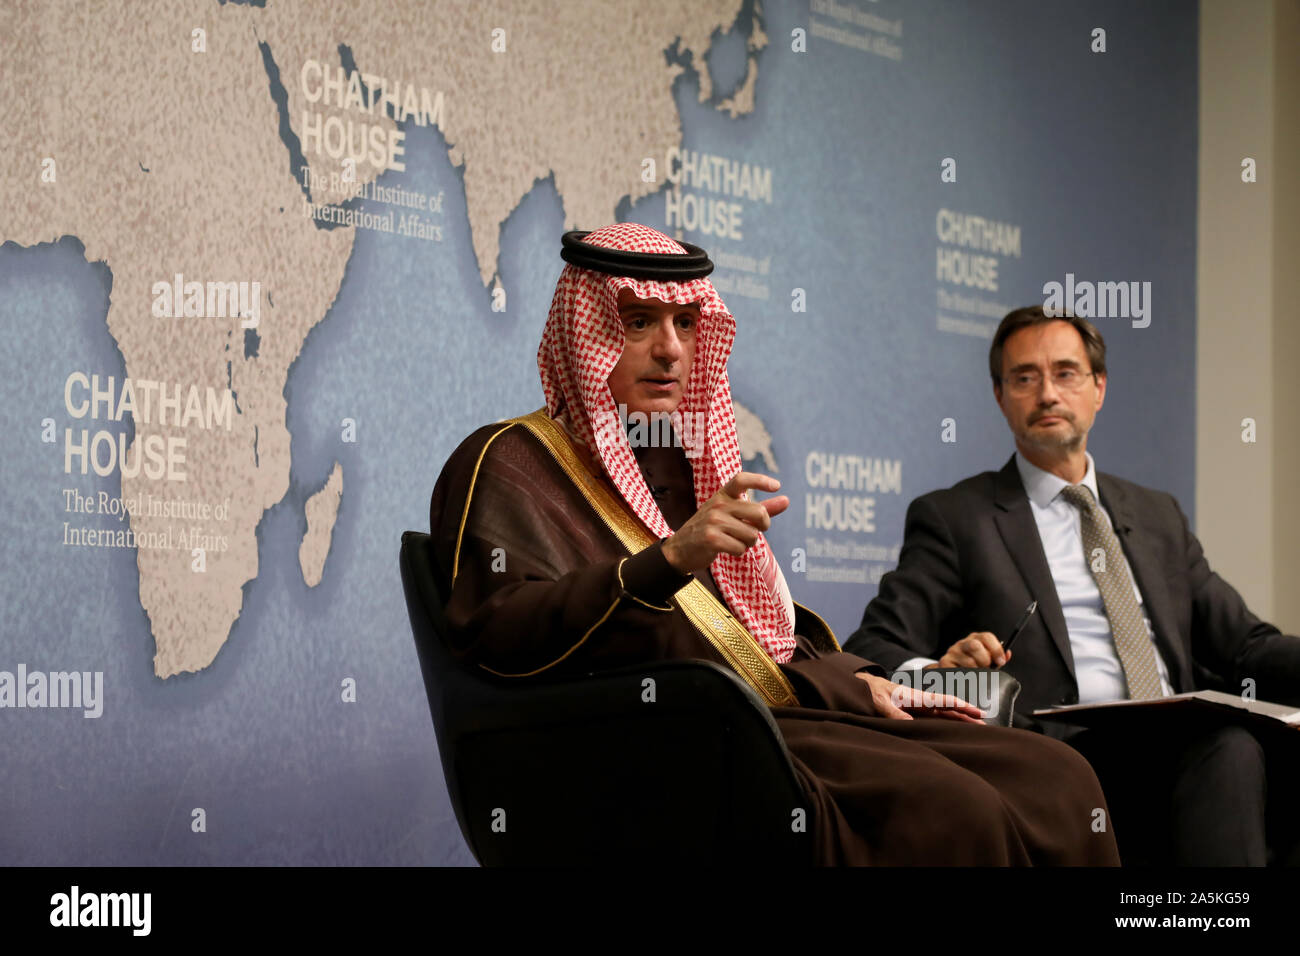 London/Großbritannien - 14. Oktober 2019: Adel al-Jubeir, Saudi Arabien der Staatsminister für auswärtige Angelegenheiten, sprechen im Chatham House auf Saudische Außenpolitik, während Chatham House Direktor Robin Niblett (R) schaut auf Stockfoto